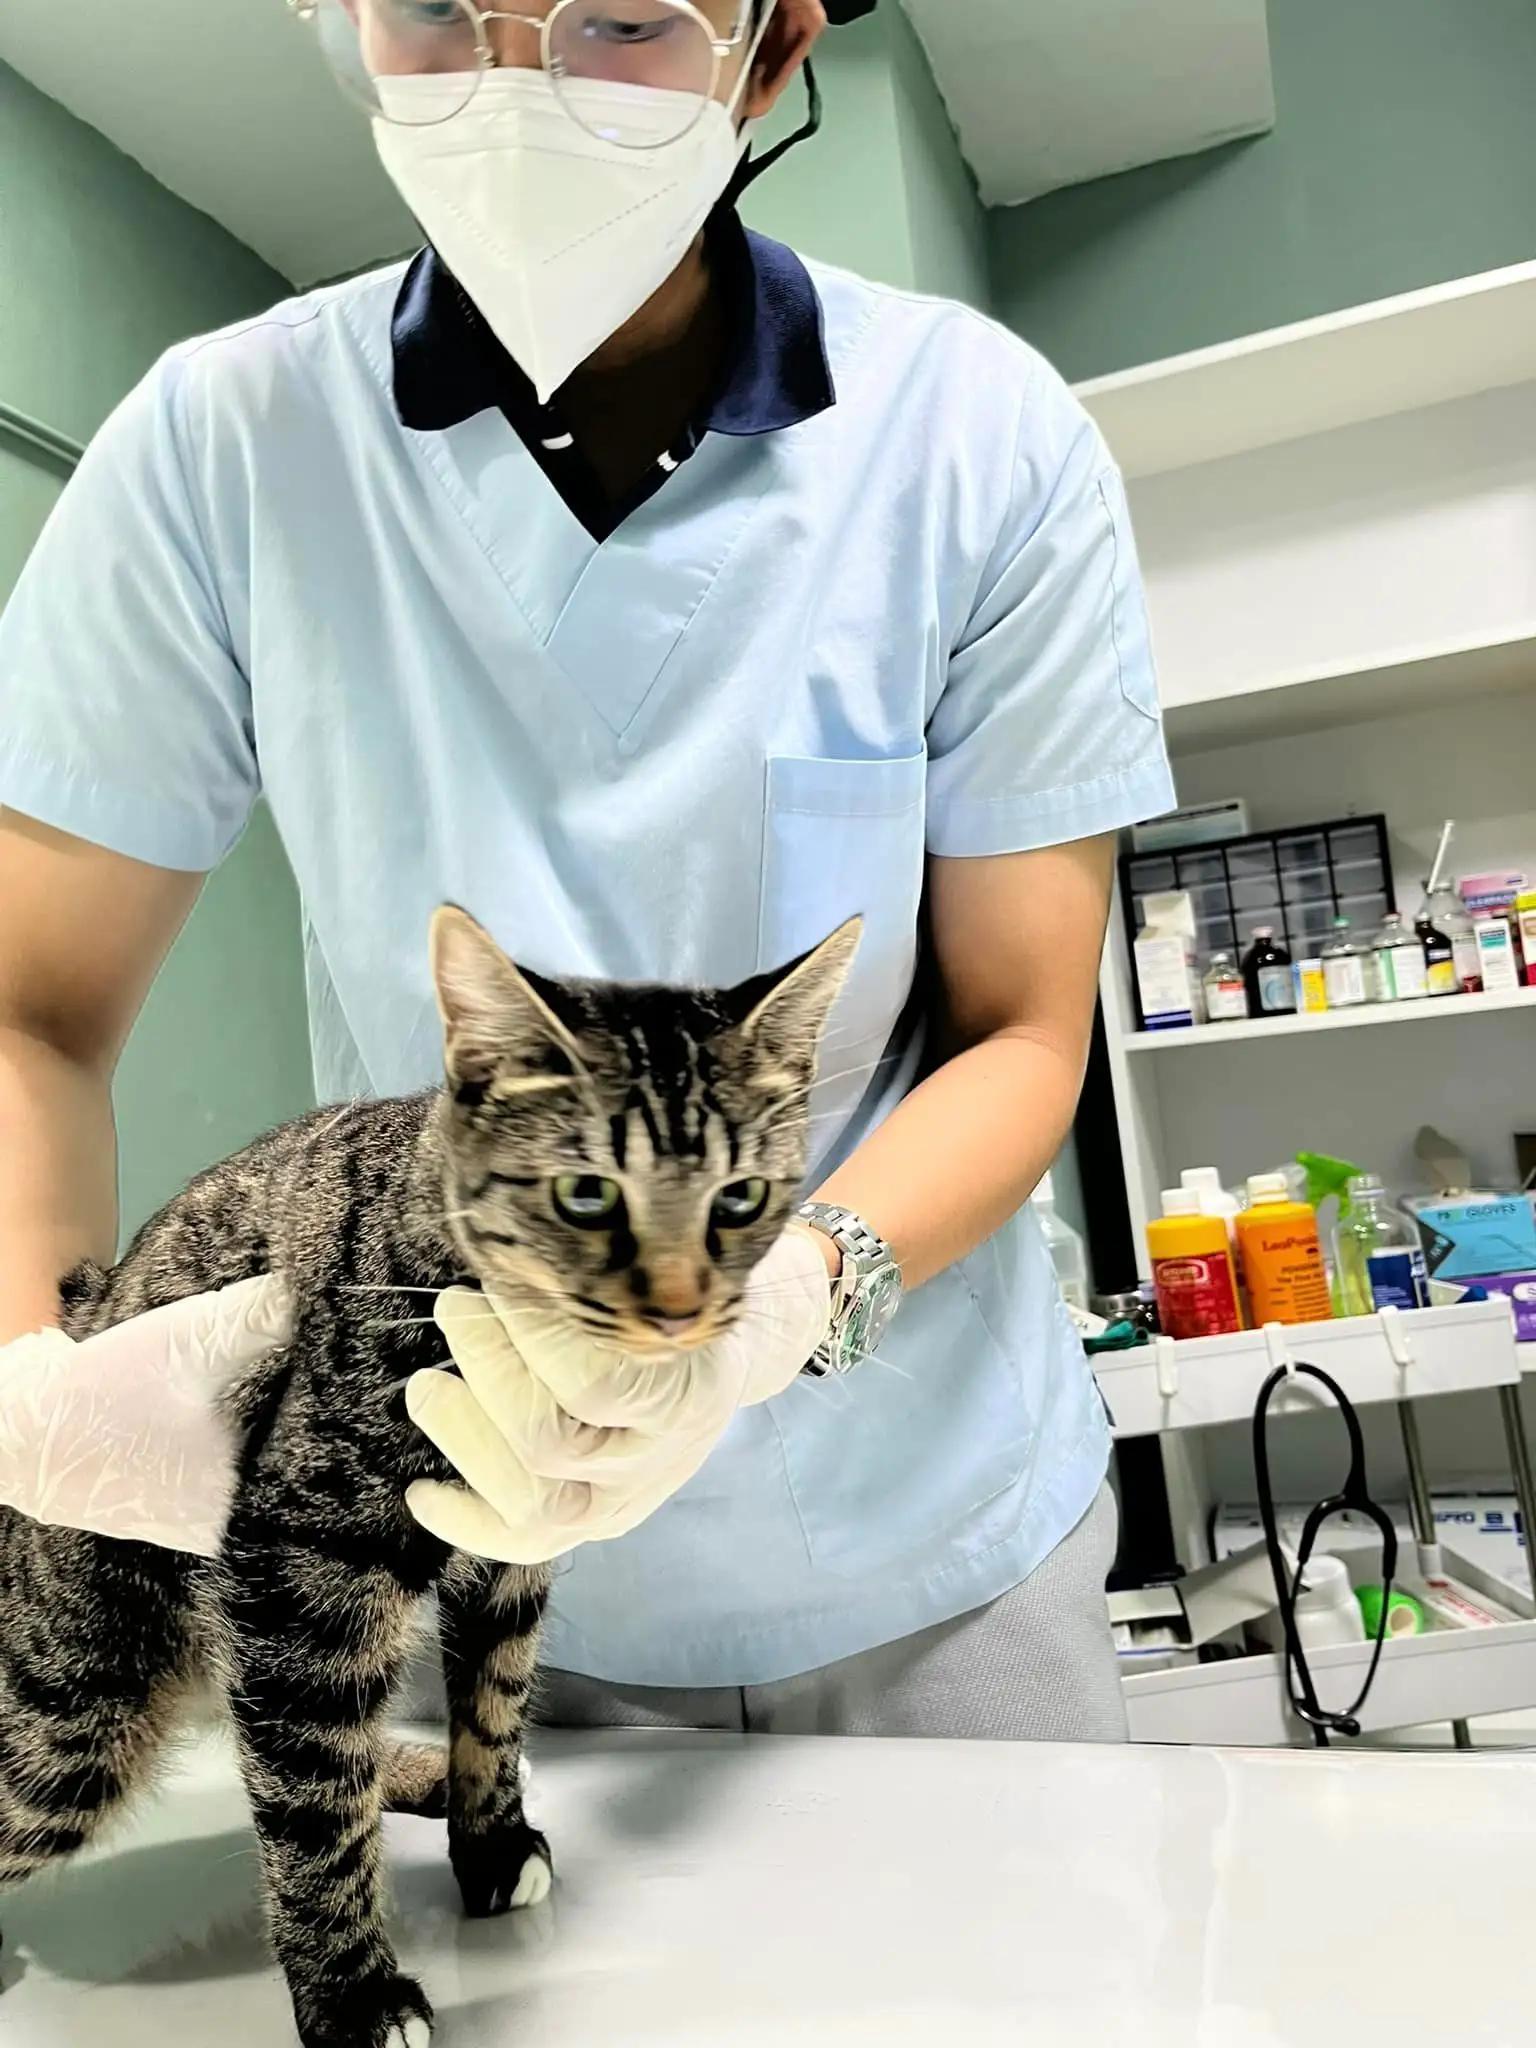 รักษาสัตว์ โมโมะ-สาขาบางพลี ผ่าตัด ทำหมันหมาแมว รักษาโรคทั่วไป